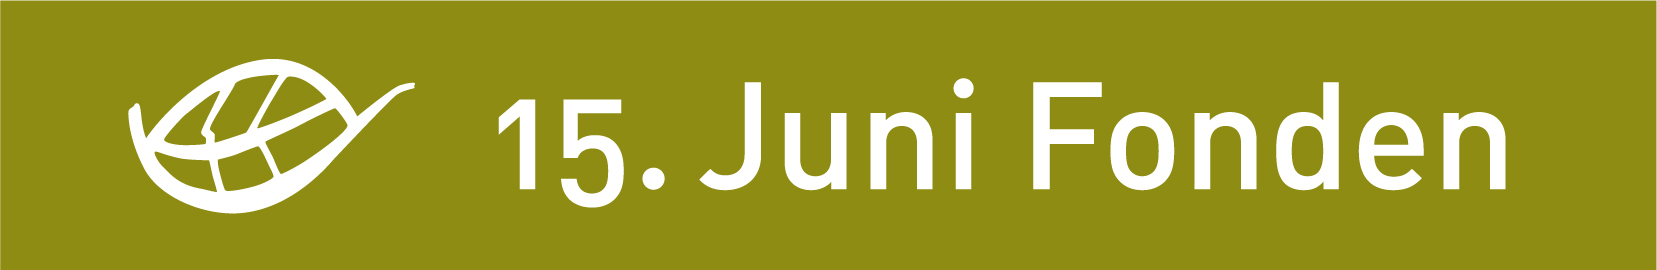 15 Juni Fonden Logo RGB COLOR